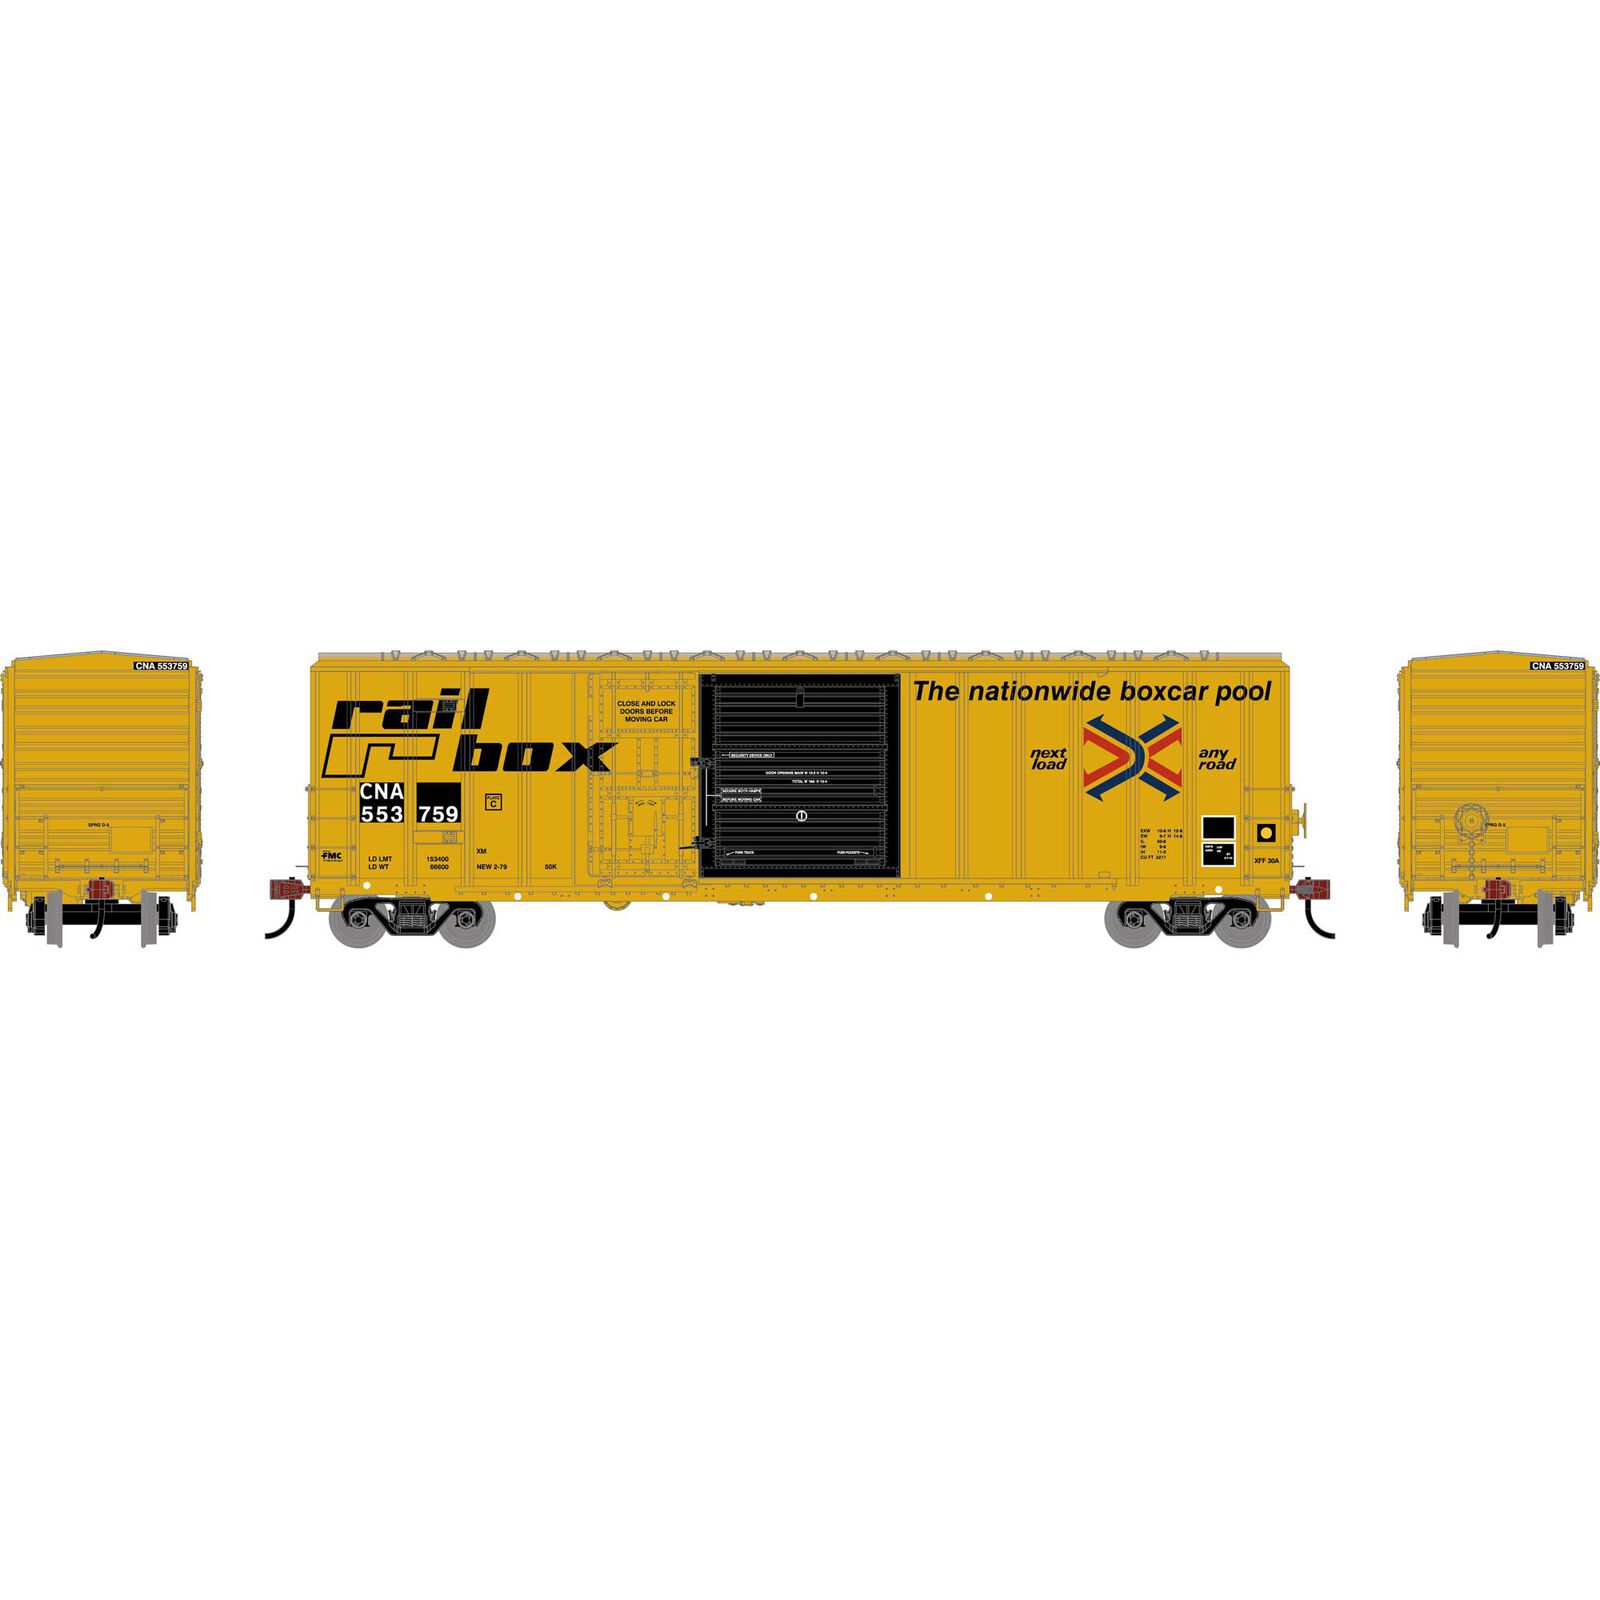 HO 50' FMC 5277 Combo Door Box Car, CNA 'Ex-Railbox' #553759